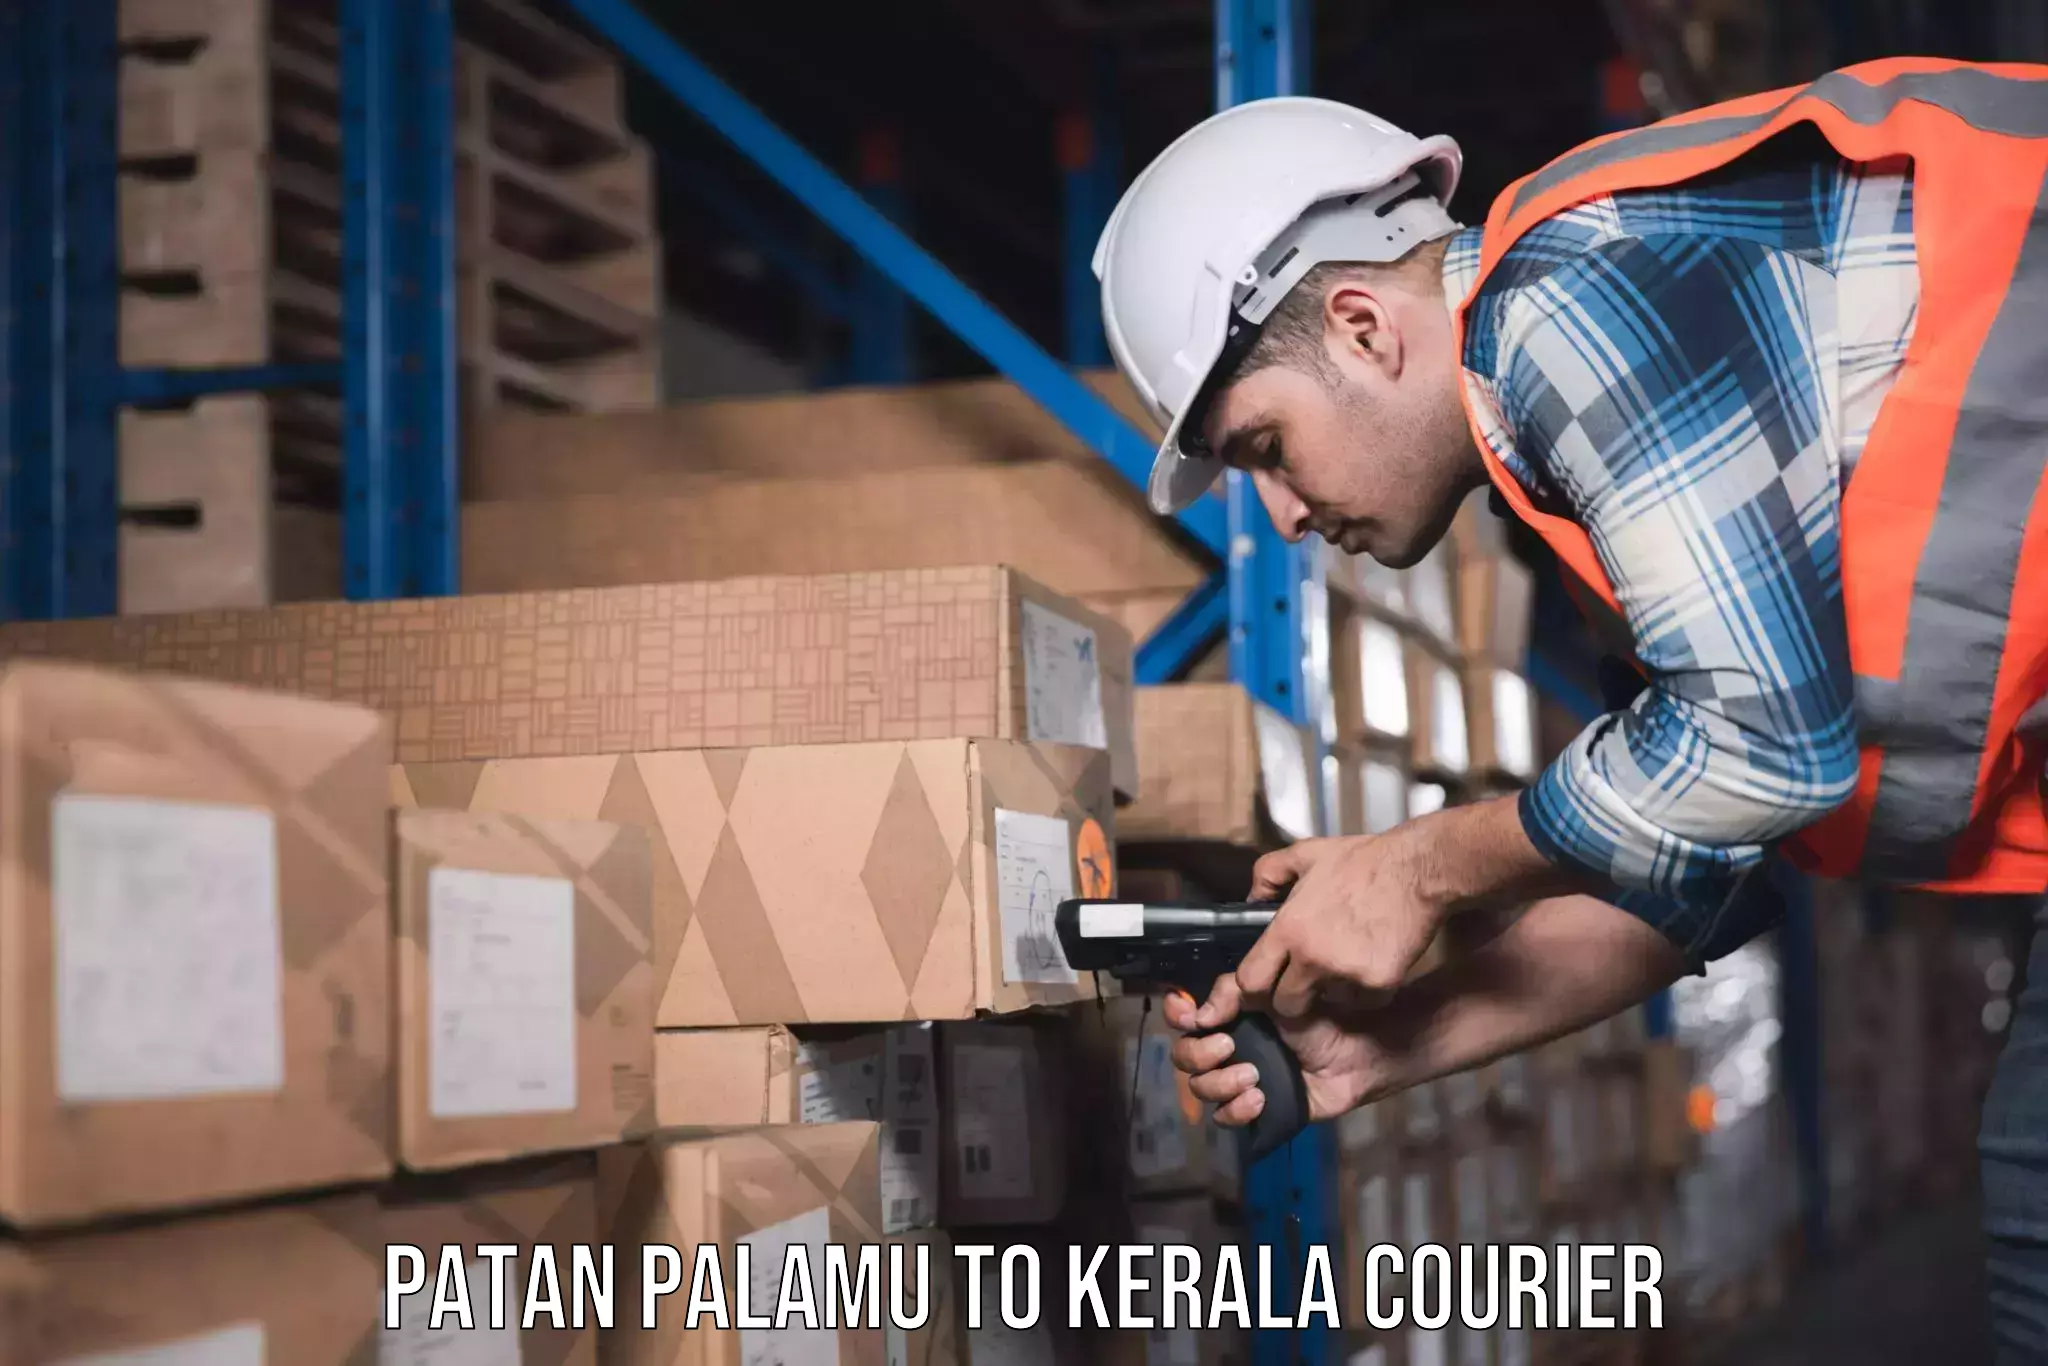 Customized moving experience Patan Palamu to Cochin Port Kochi